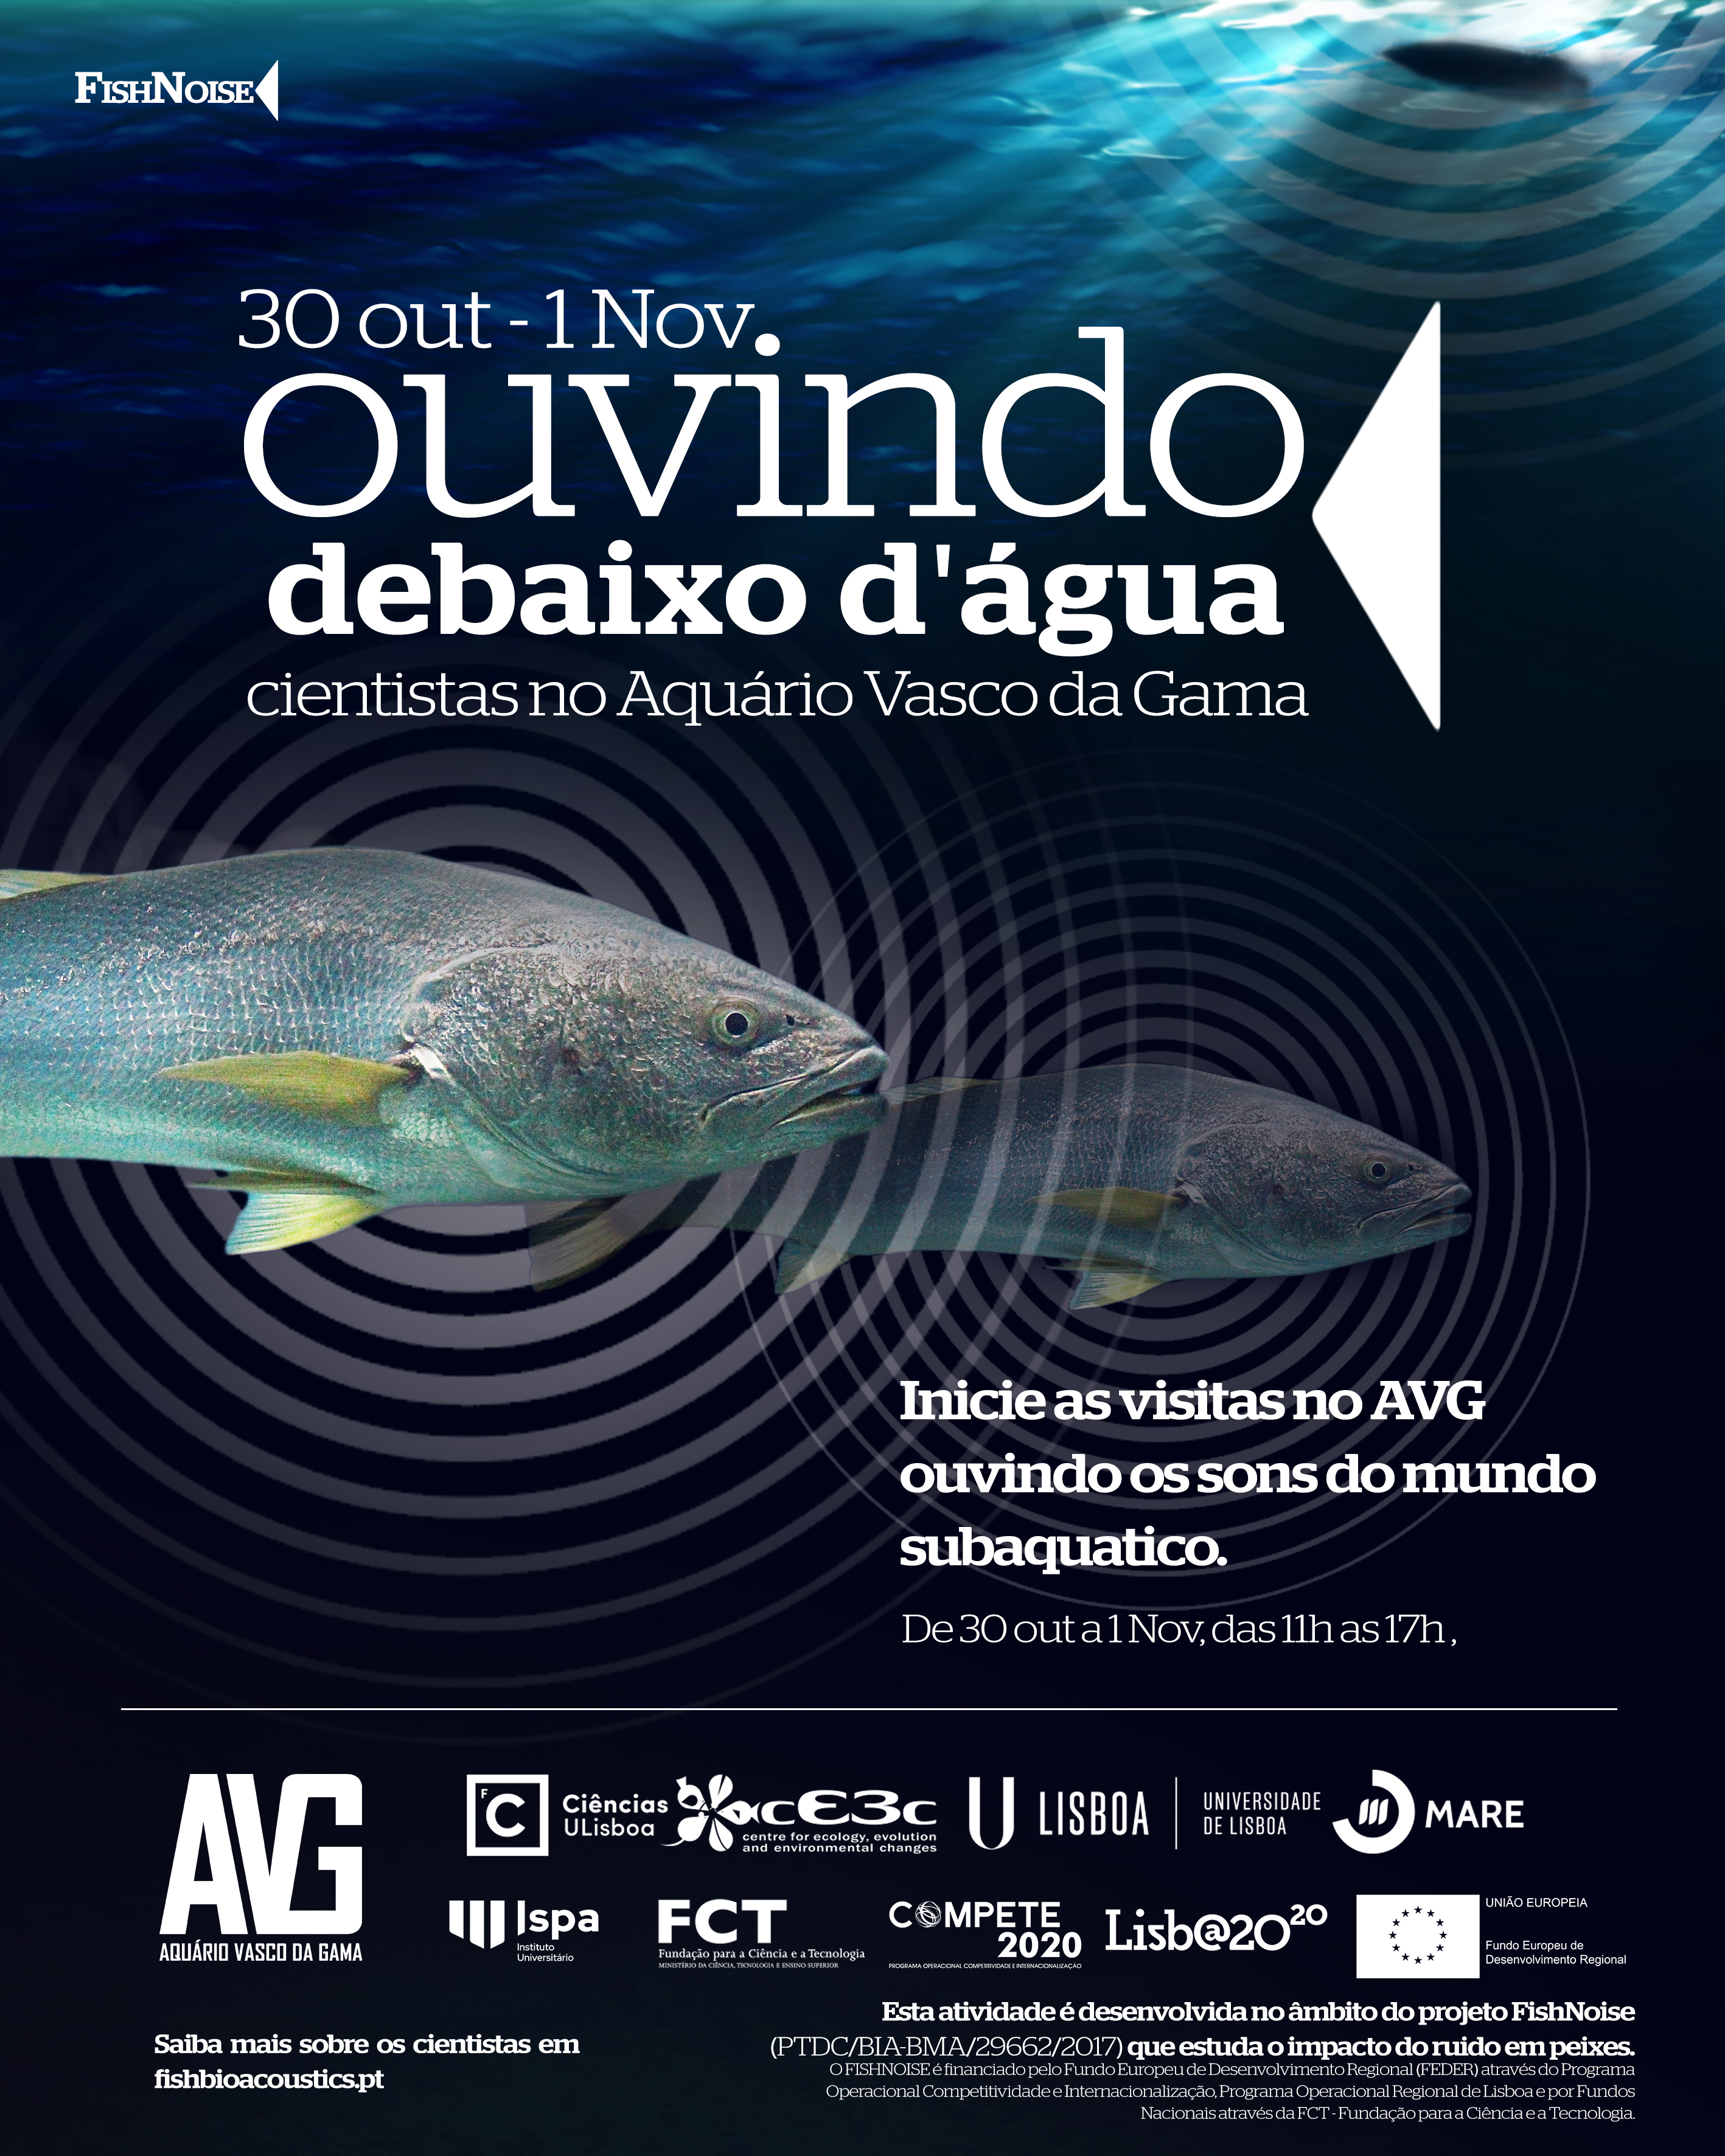 Fish Noise - Aquario Vasco da Gama